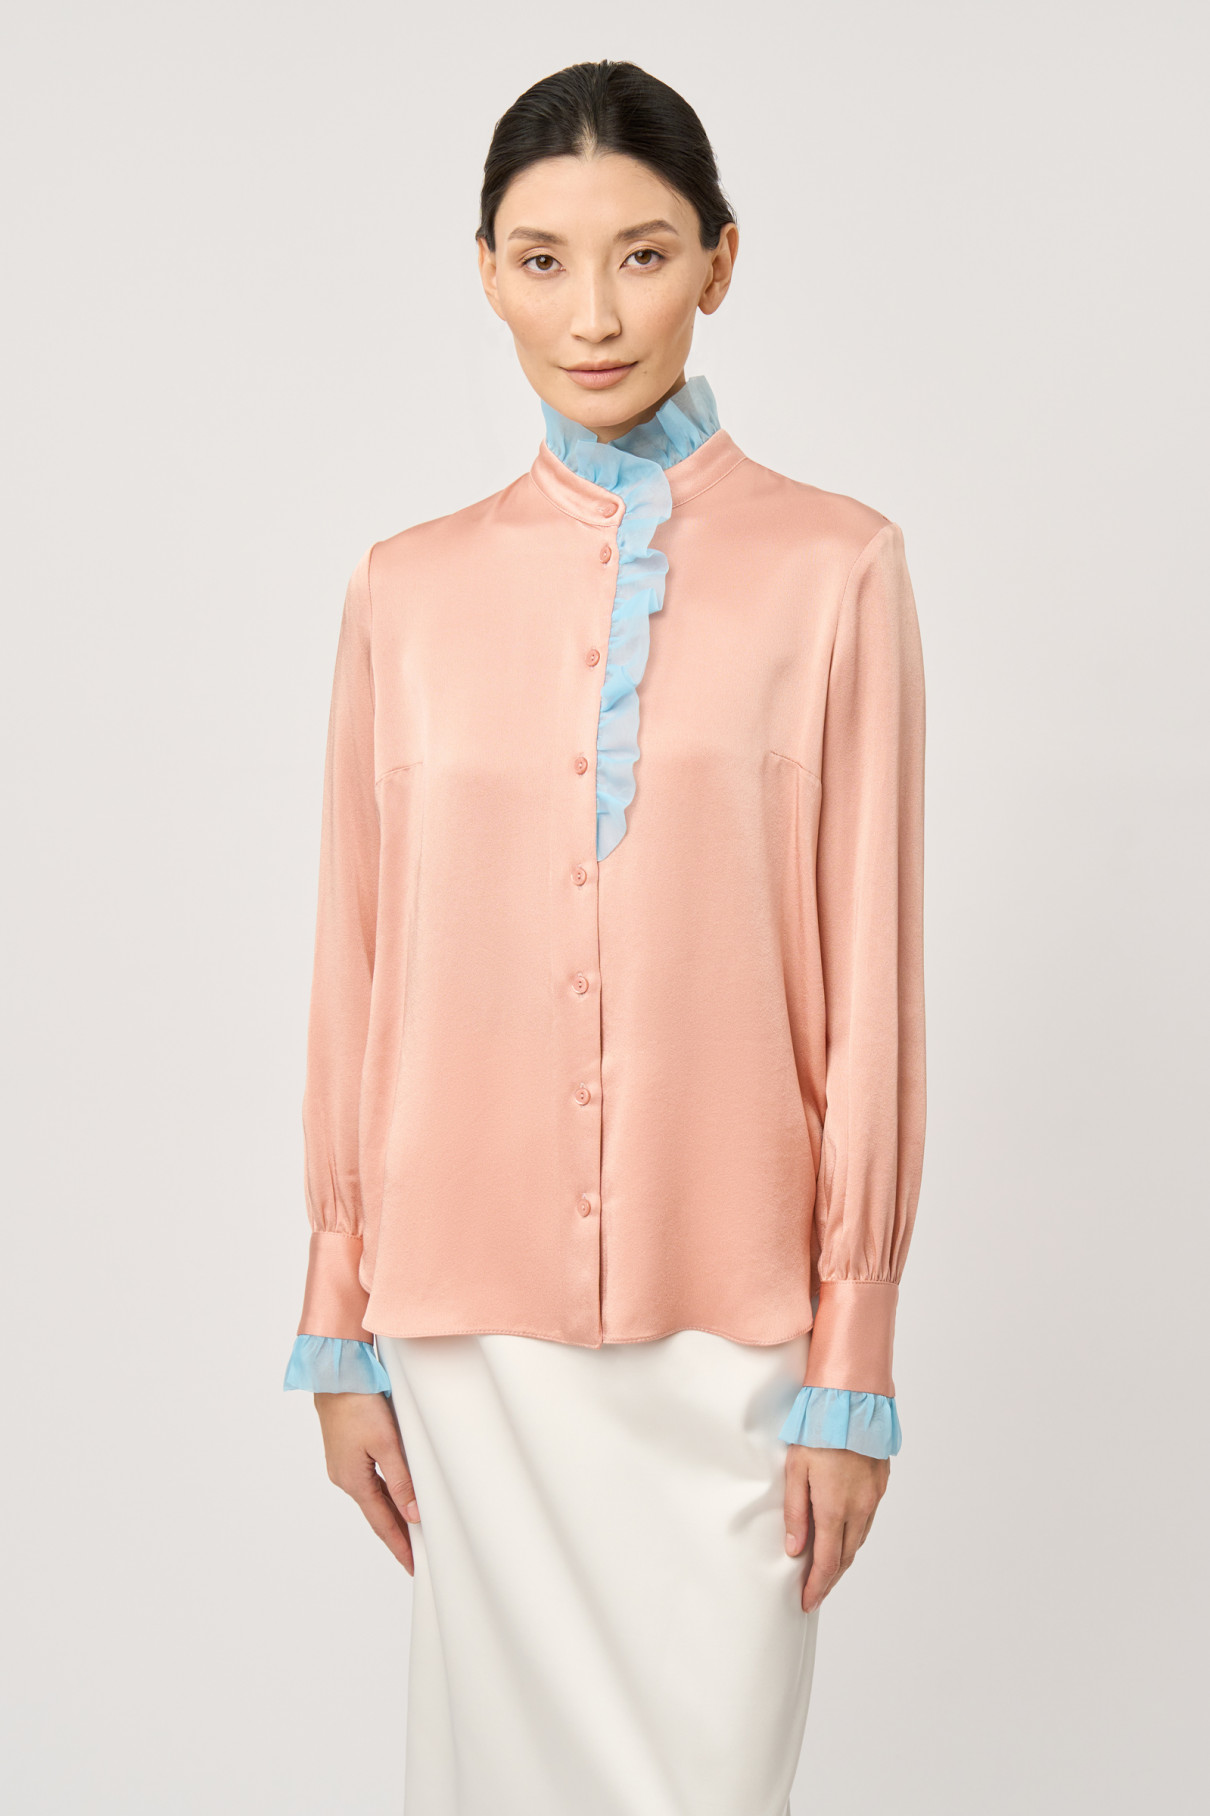 FR20-РН-3-рз-4 Розовая блуза с отделкой органзой , Розовый, арт. FR20-РН-3-рз-4 купить в интернет-магазине